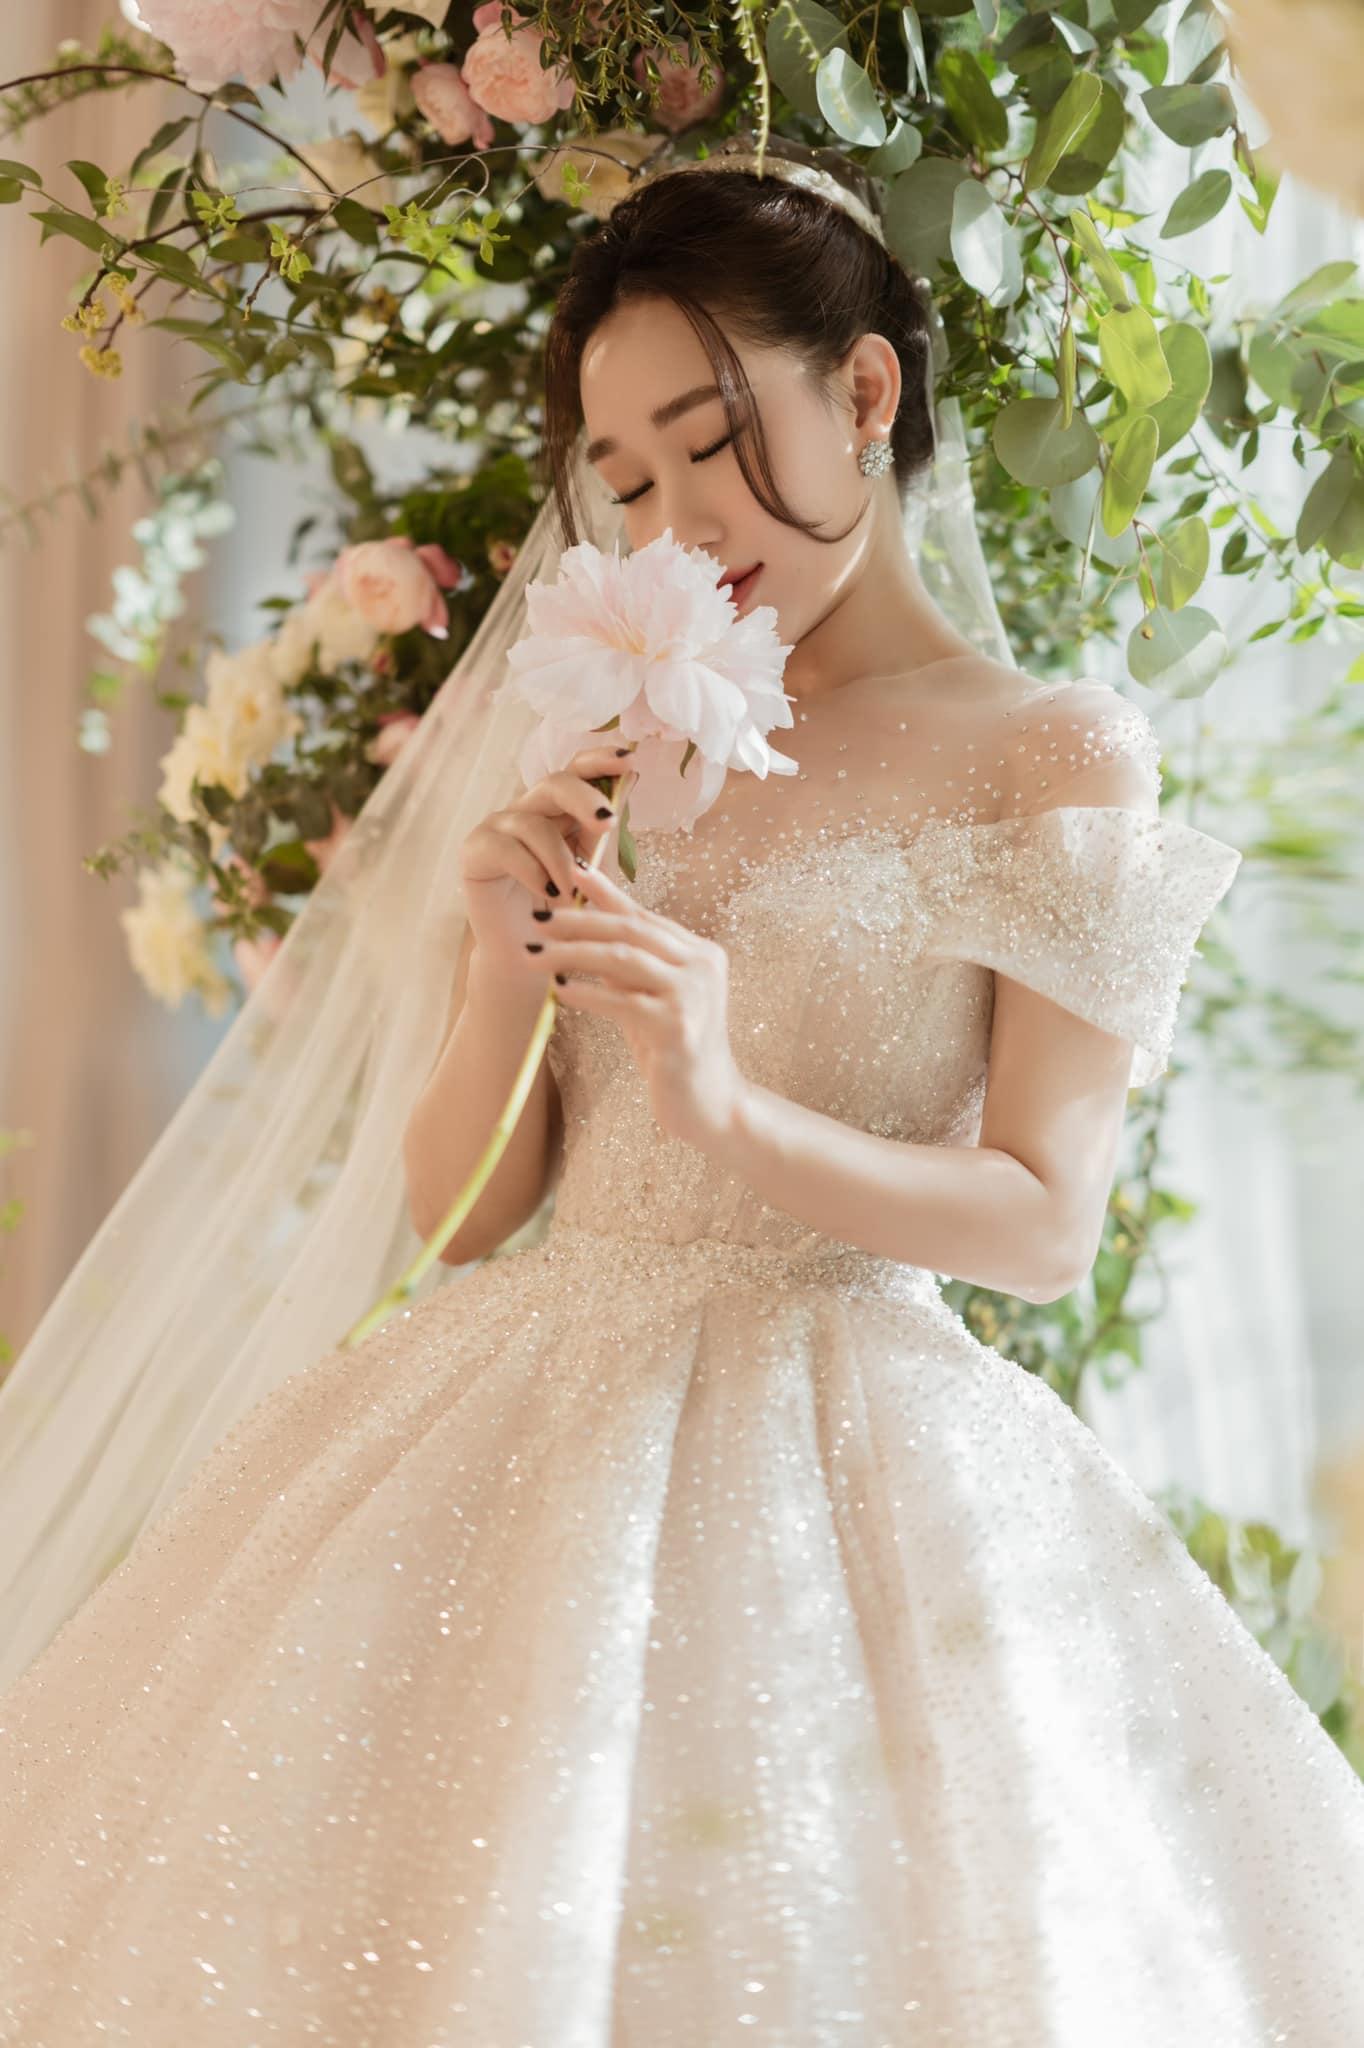 Ngắm lại 3 mẫu váy cưới trong mơ của vợ 3 cầu thủ Duy Mạnh - Thành Chung - Tấn Tài - Ảnh 8.